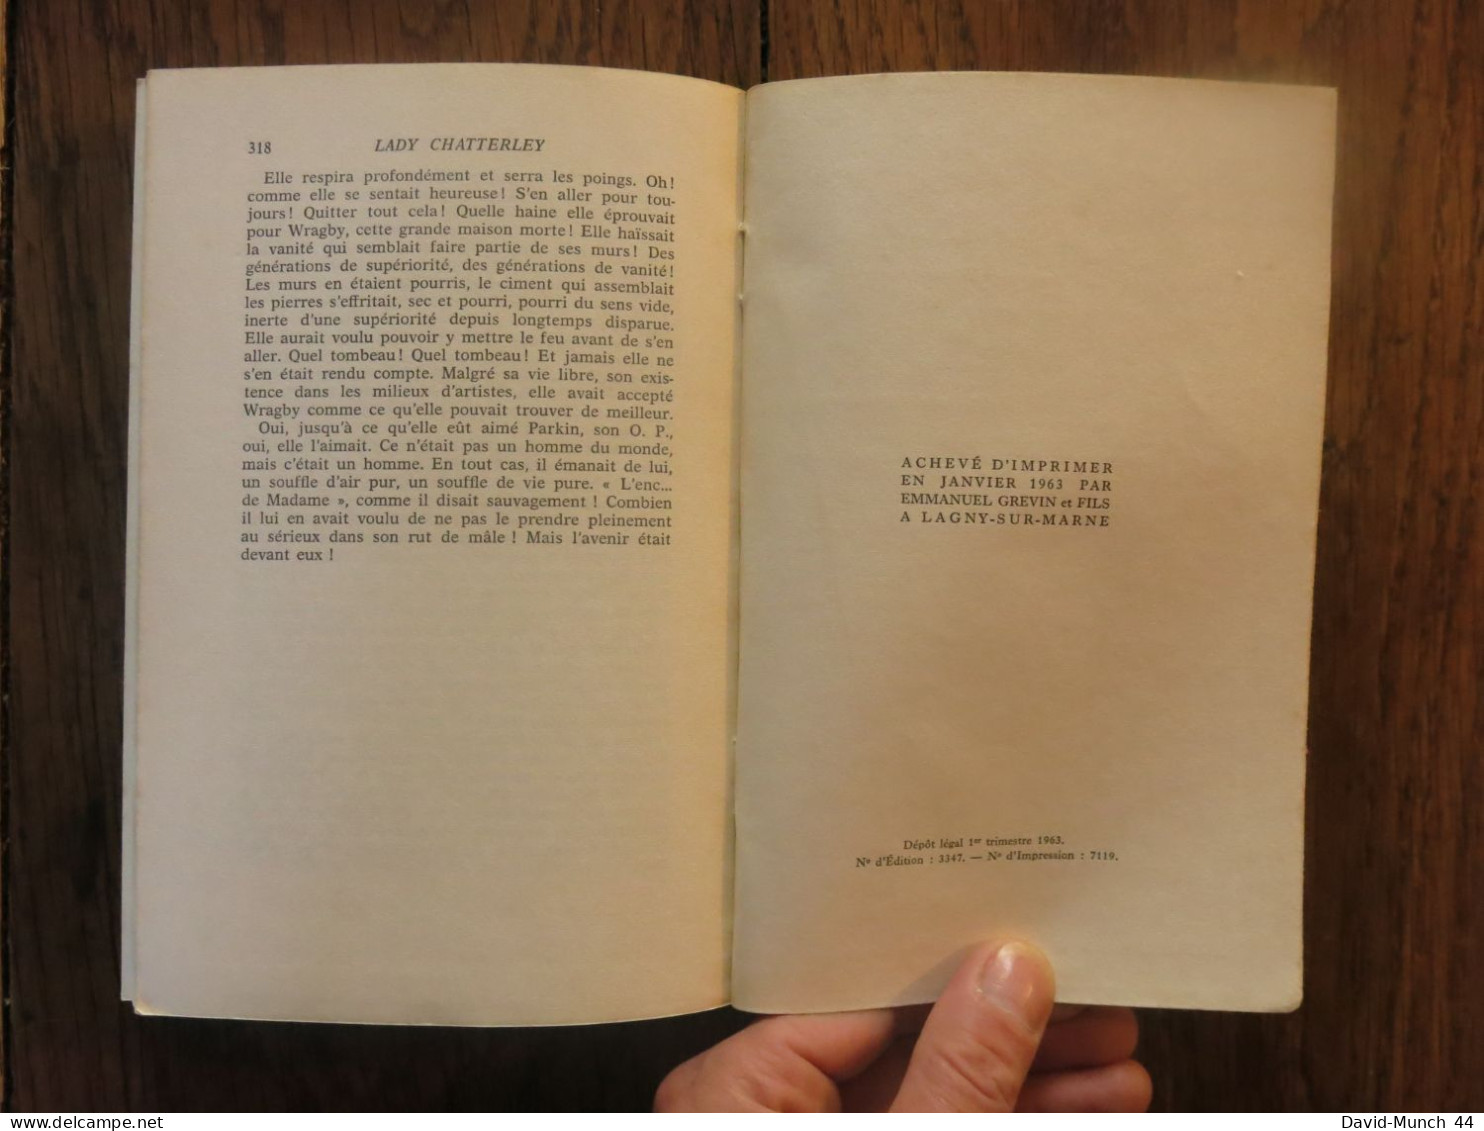 Lady Chatterley, première version de D.H. Lawrence. Editions Albin Michel, "Les grandes traductions". 1963